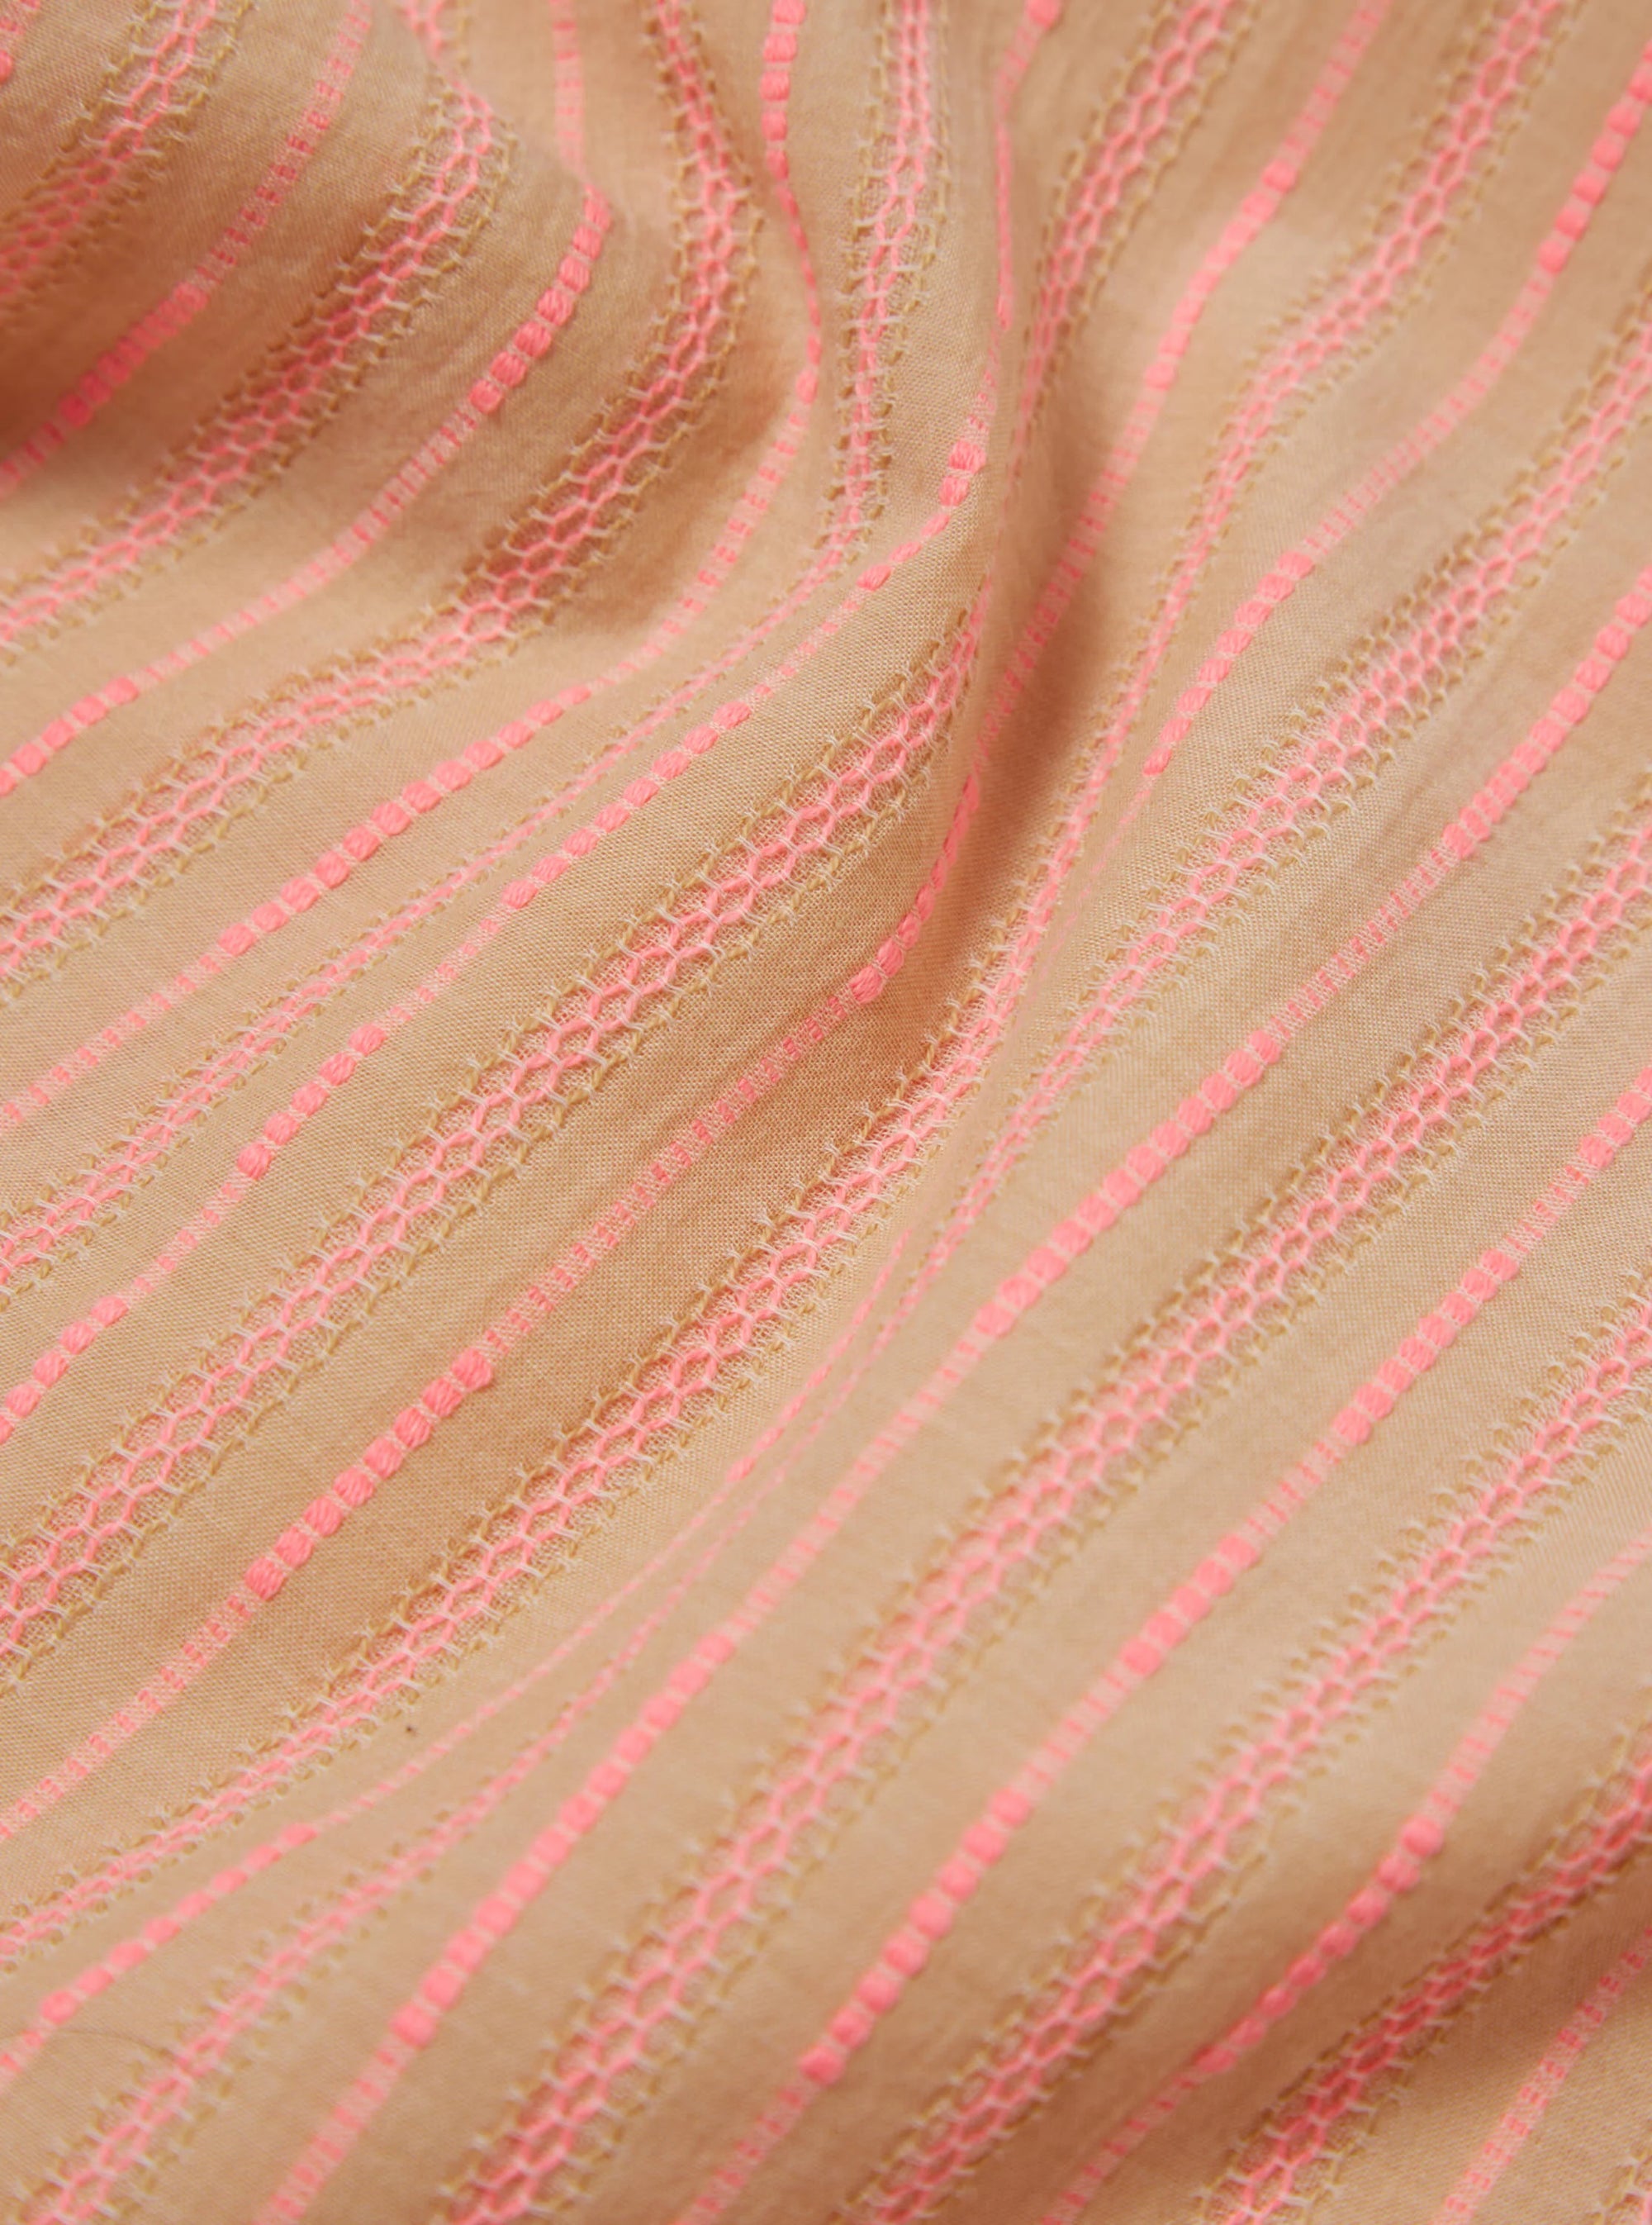 Road Shirt - Beige/Pink Fluro Cotton